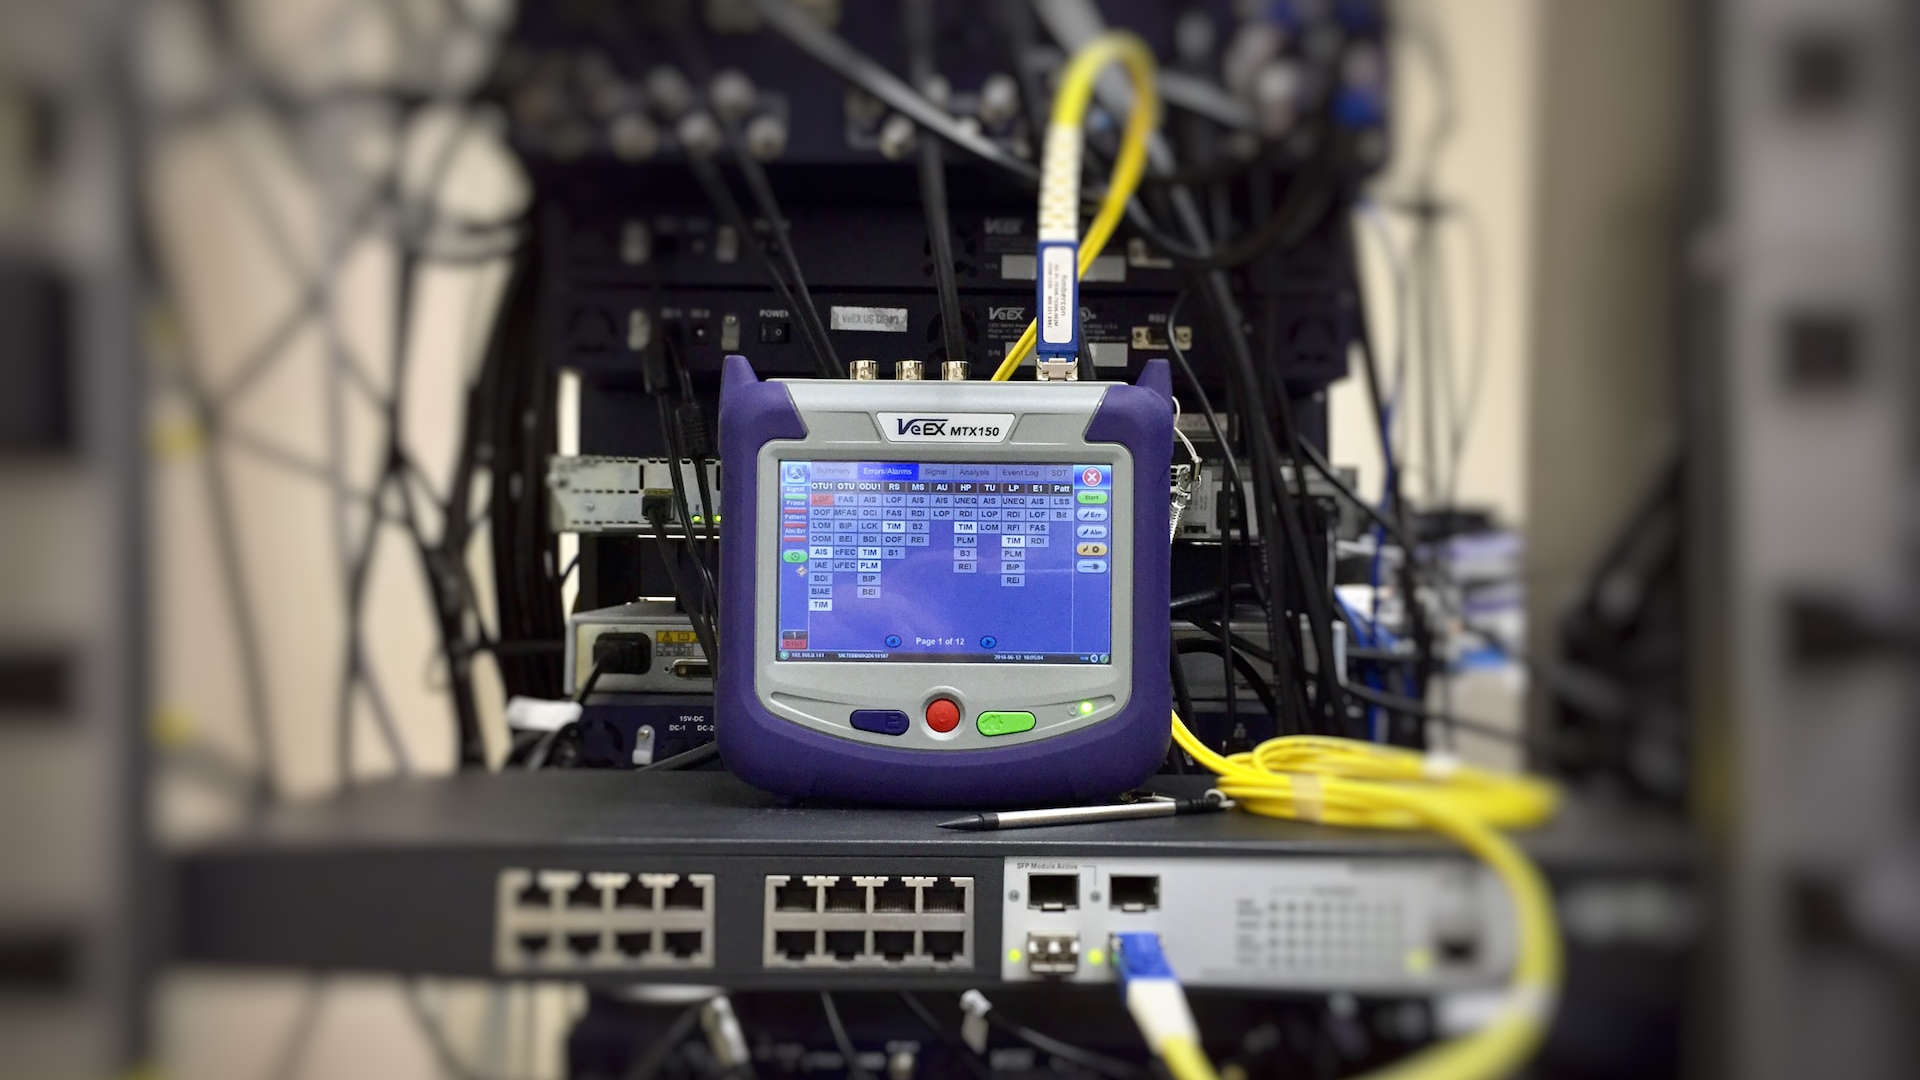 Netzwerk-Meßgerät steht auf einem Netzwerk-Hub/Switch.